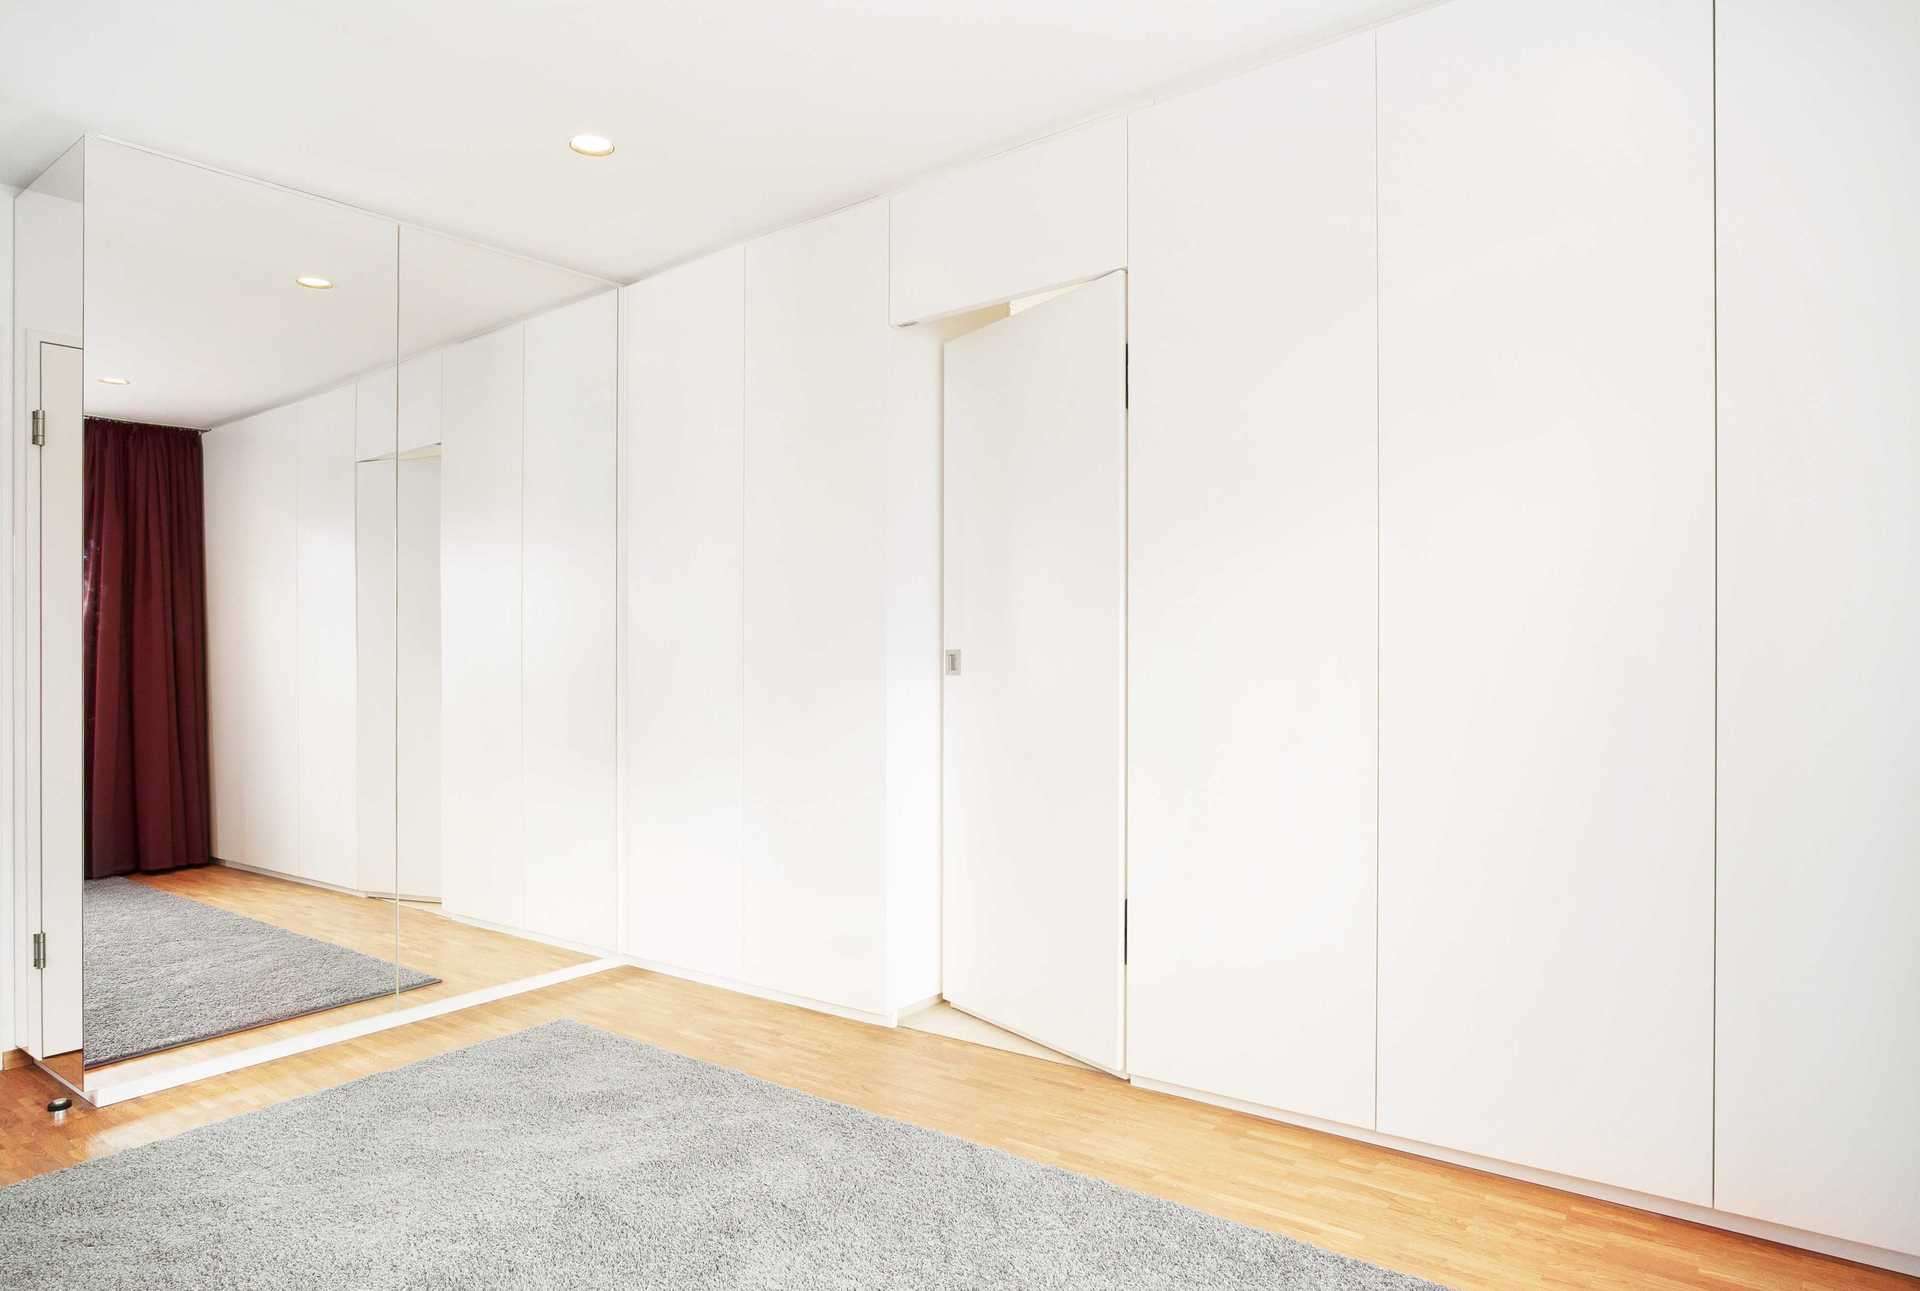 Ankleide/Kleiderschrank über die ganze Wand mit integrierter Tür. Alles in weiß Lack und grifflos. Wandgroßer Spiegel daneben.